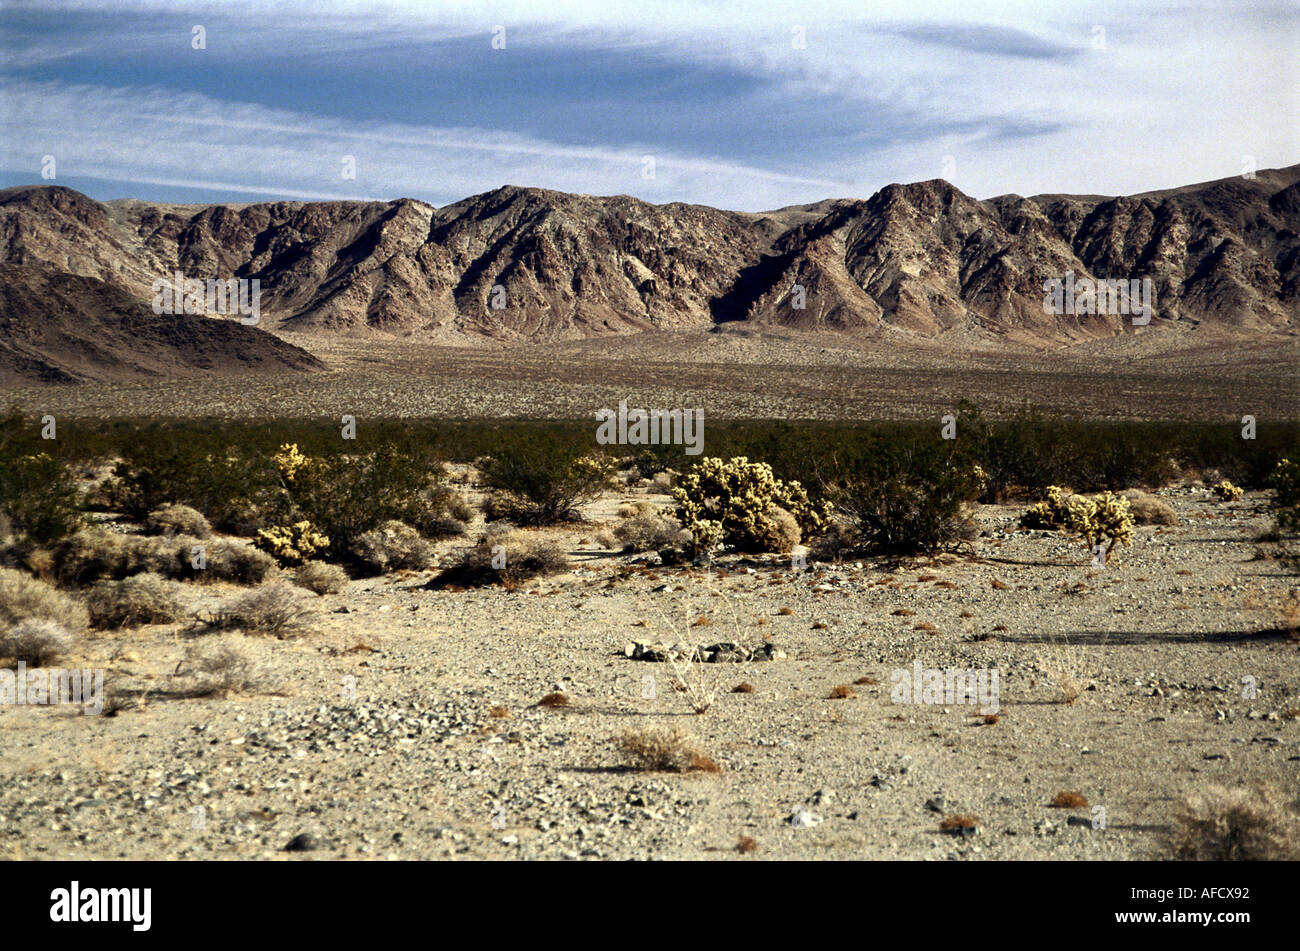 Geo.: STATI UNITI, Nevada, Landschaften, typische Wüstenlandschaft und vegetazione opuntien cholla kreosote büsche busch Foto Stock